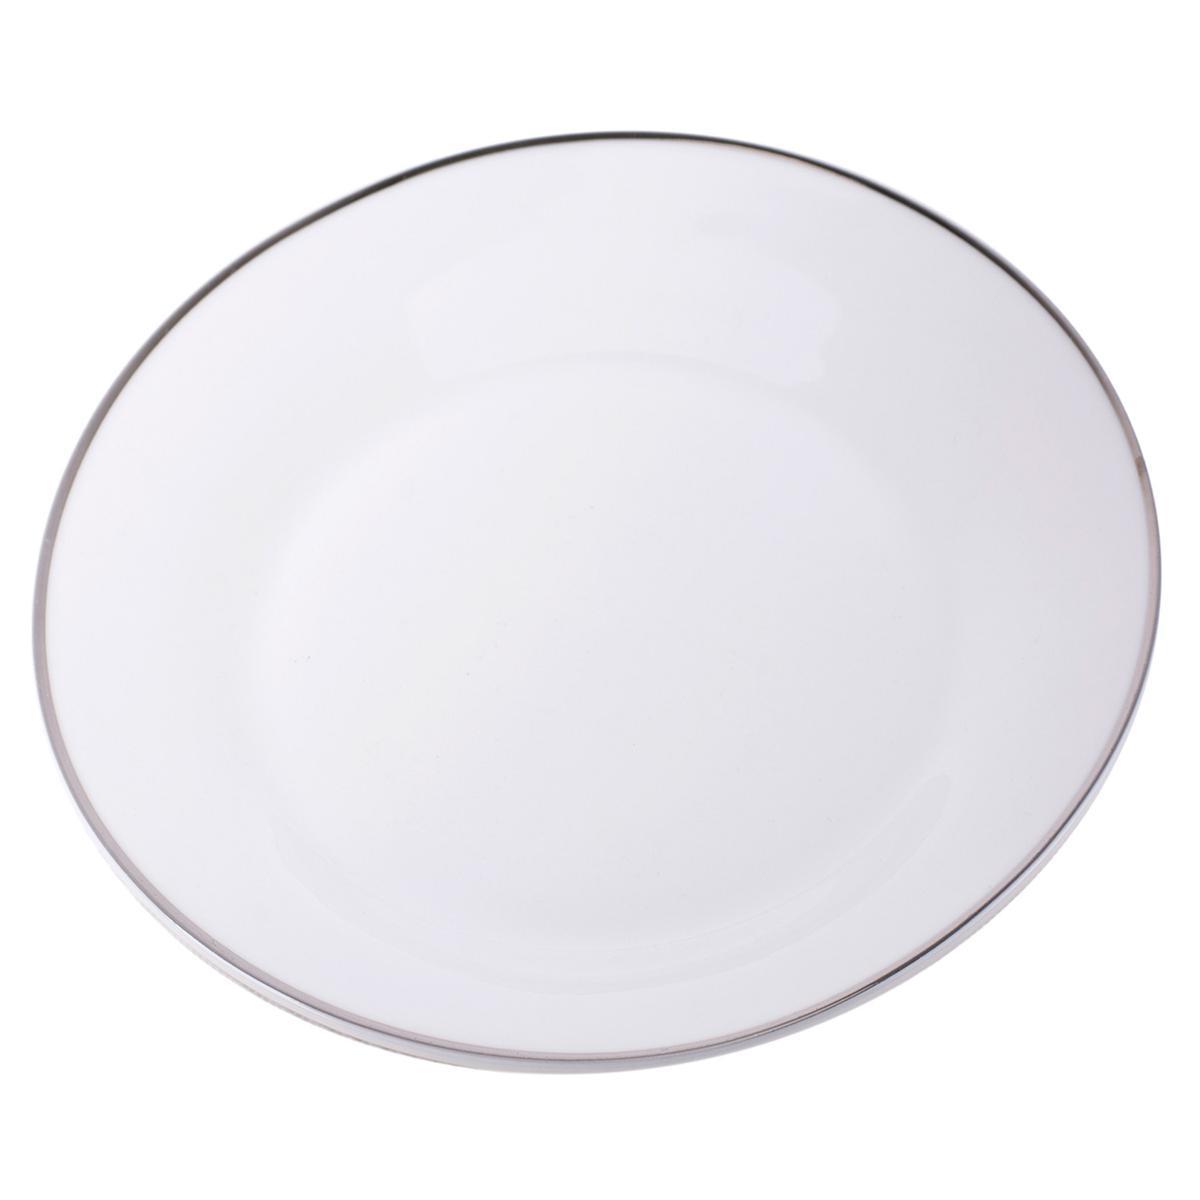 Assiette filet argenté - Porcelaine - Diamètre 27 cm - Blanc